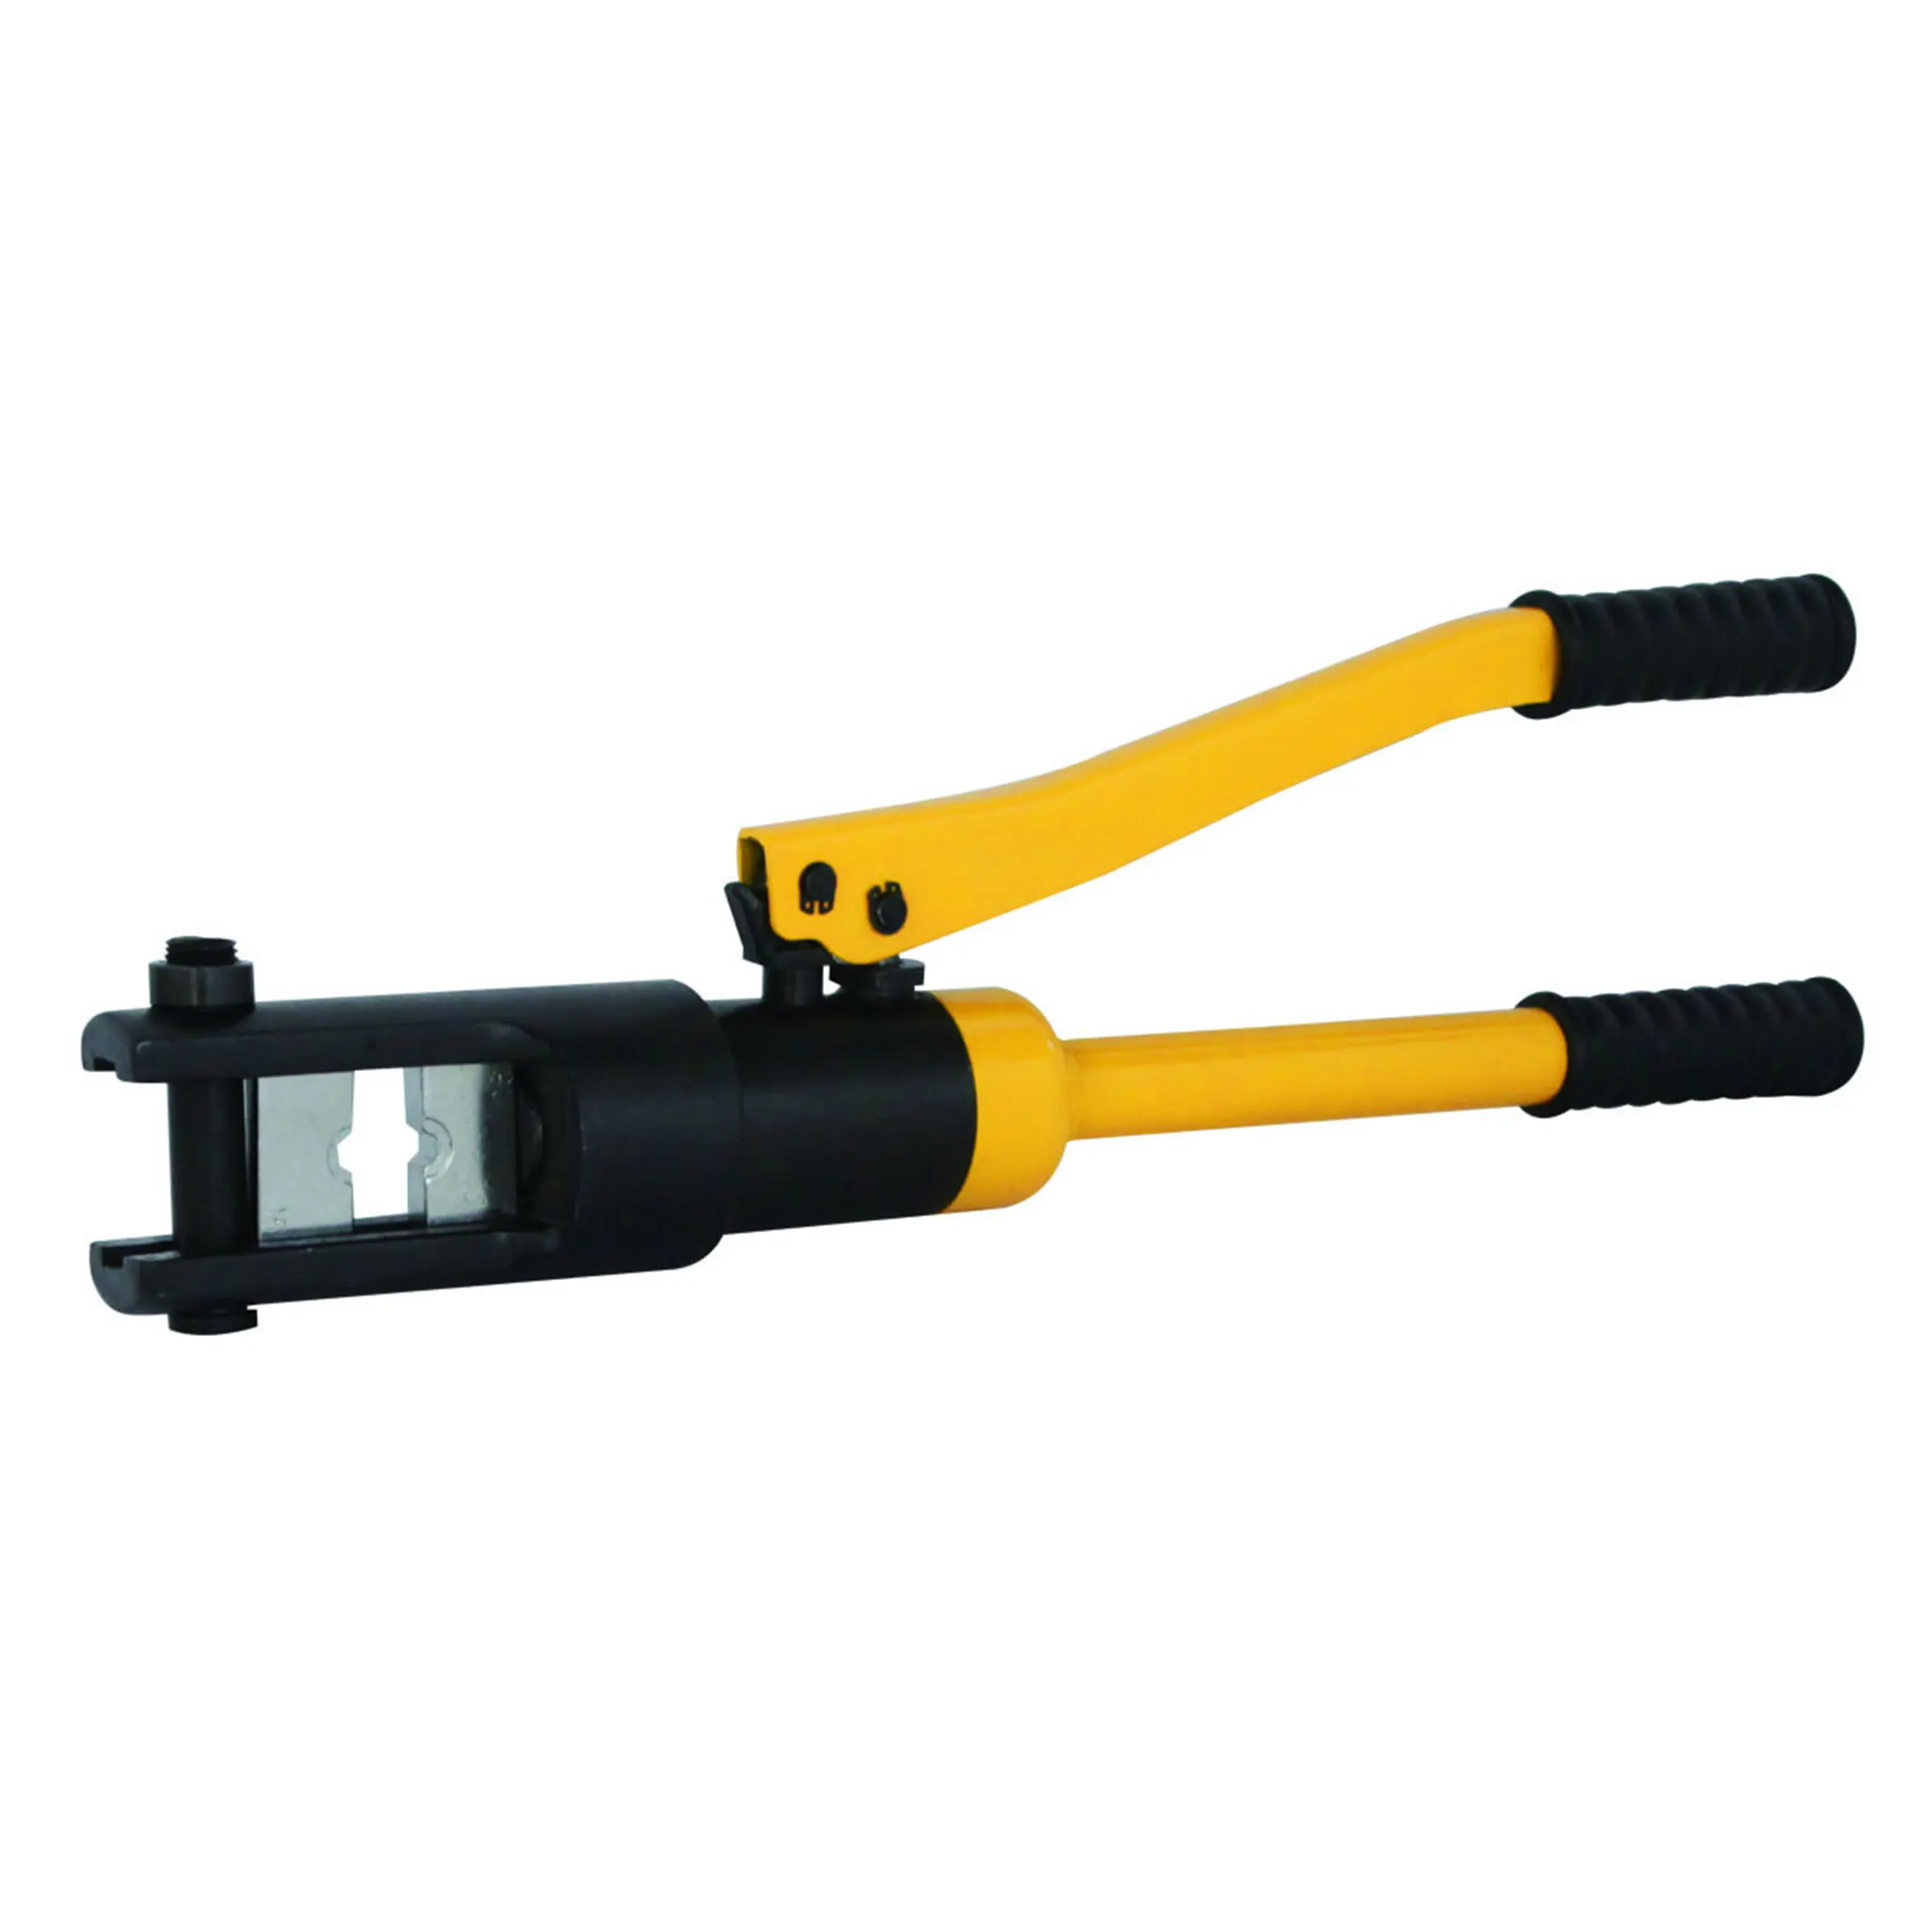 TLP гидравлический обжимной инструмент HHY-300A желтые ручки конкурентоспособная цена обжимной инструмент гидравлический Сделано в Китае